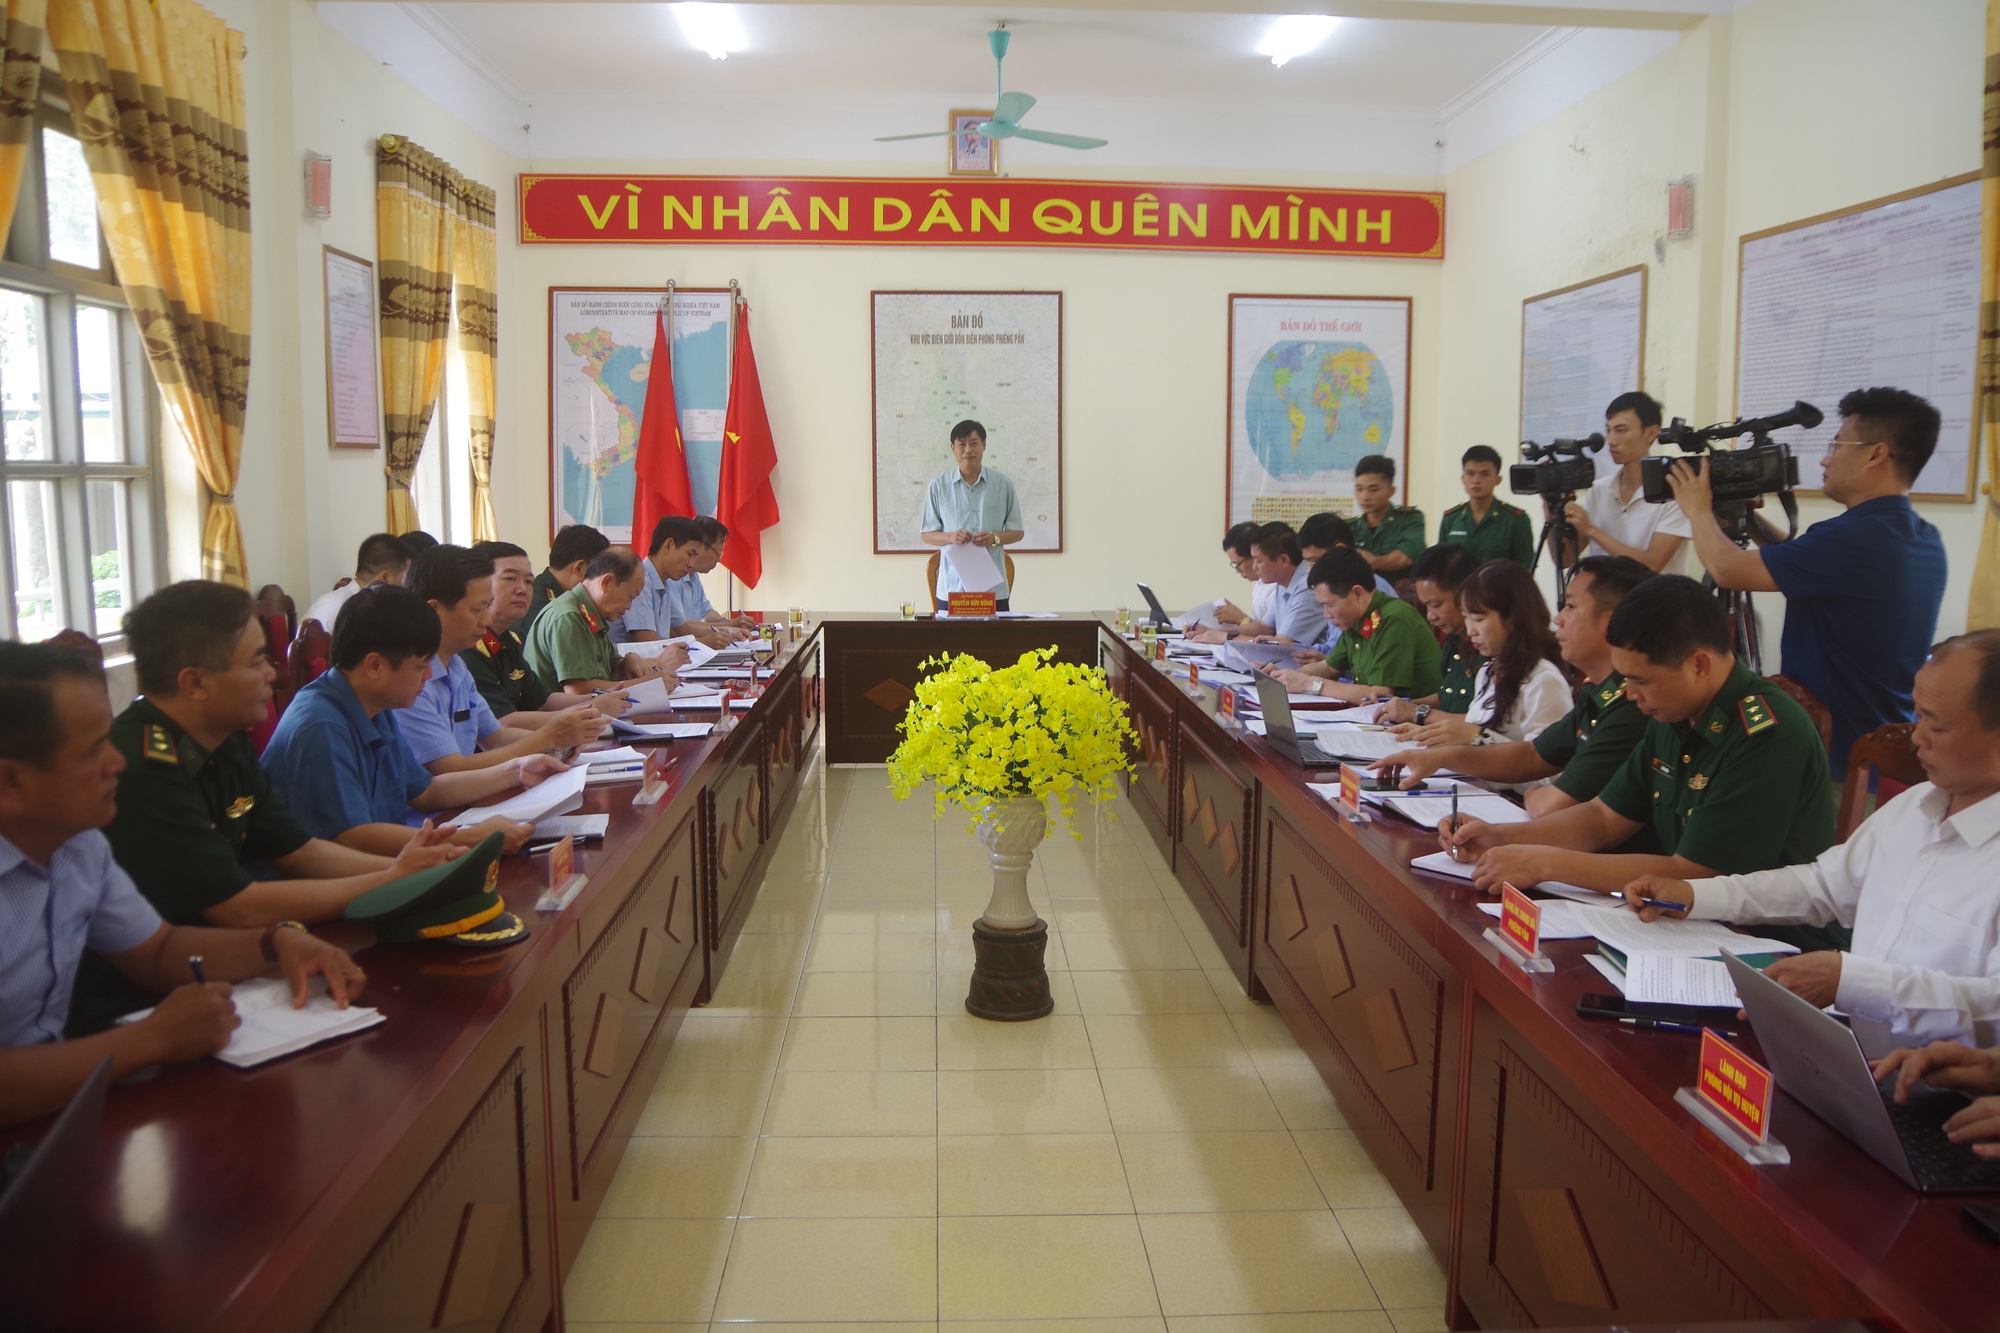 Đồng chí Nguyễn Hữu Đông, bí thư tỉnh ủy Sơn La kiểm tra, nắm tình hình công tác quản lý đường biên - Ảnh 1.